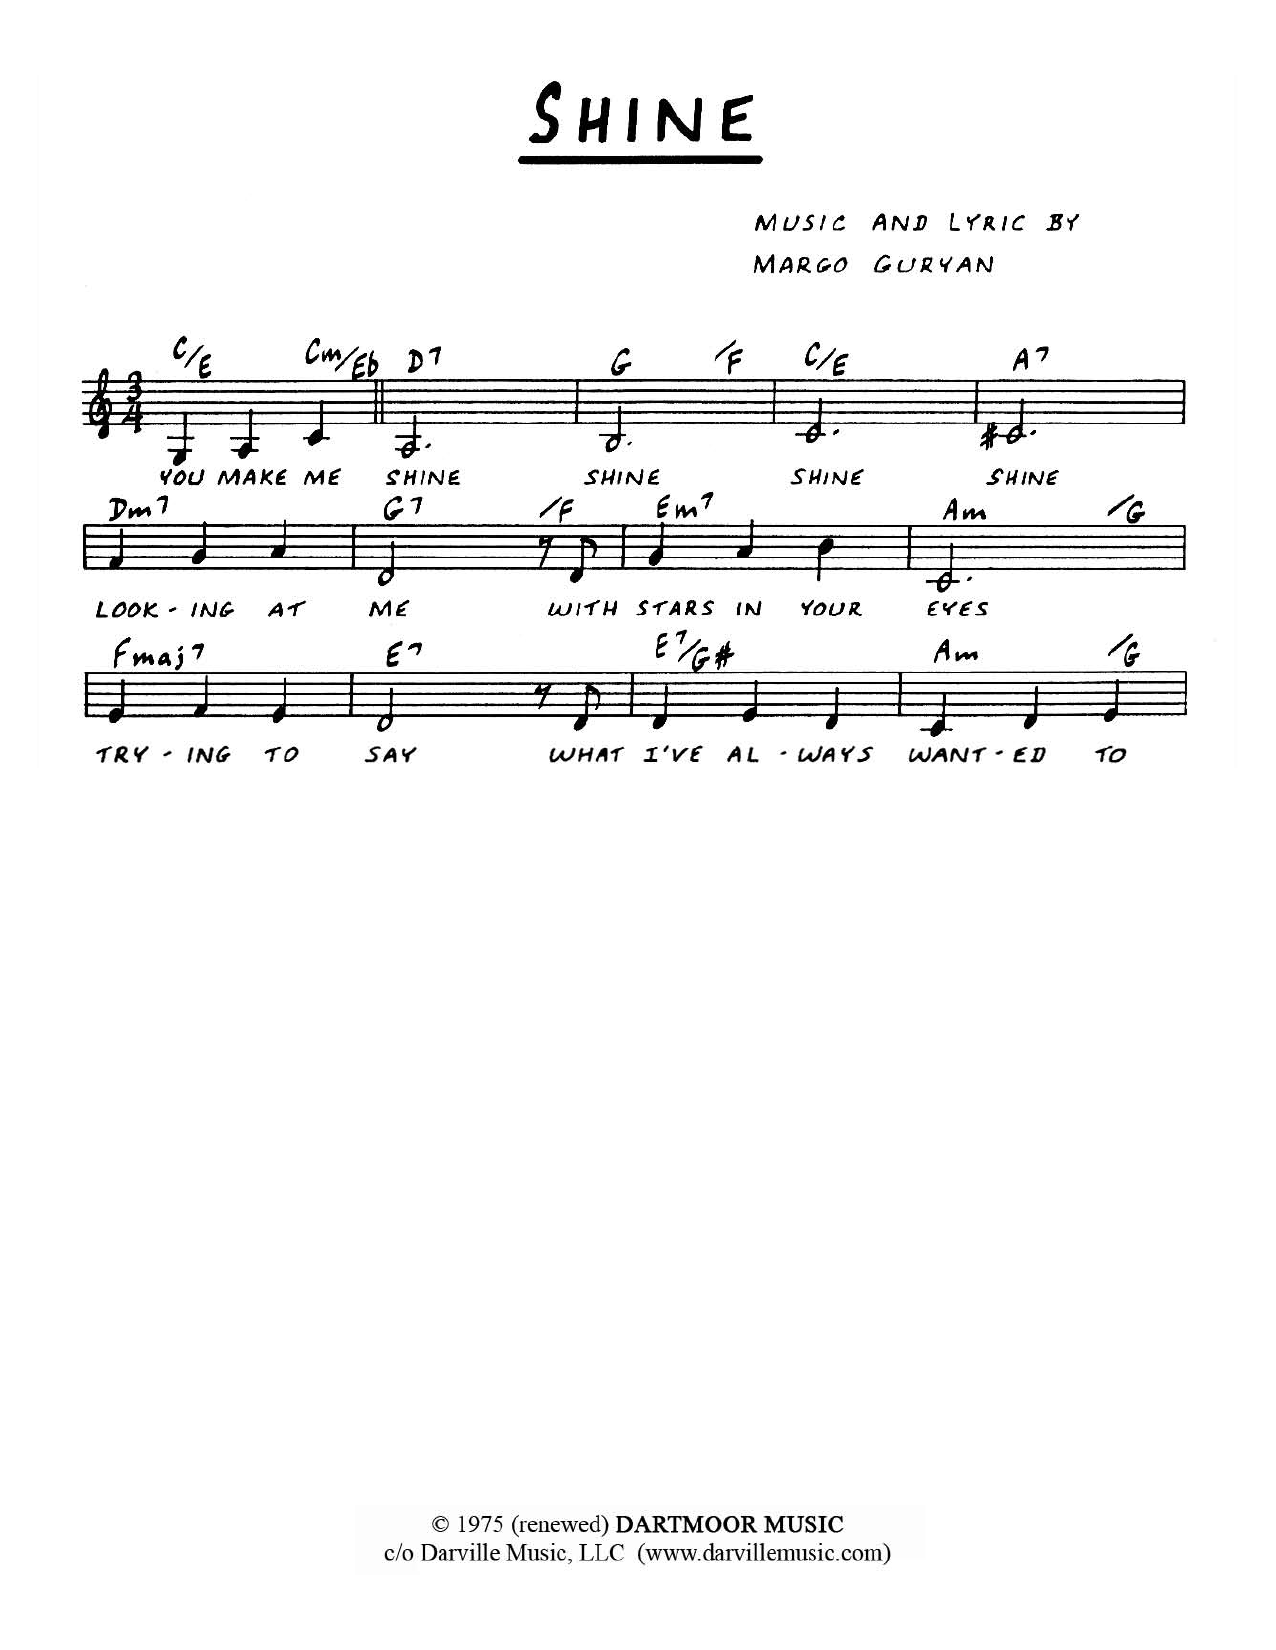 Margo Guryan Shine Sheet Music Notes & Chords for Melody Line, Lyrics & Chords - Download or Print PDF